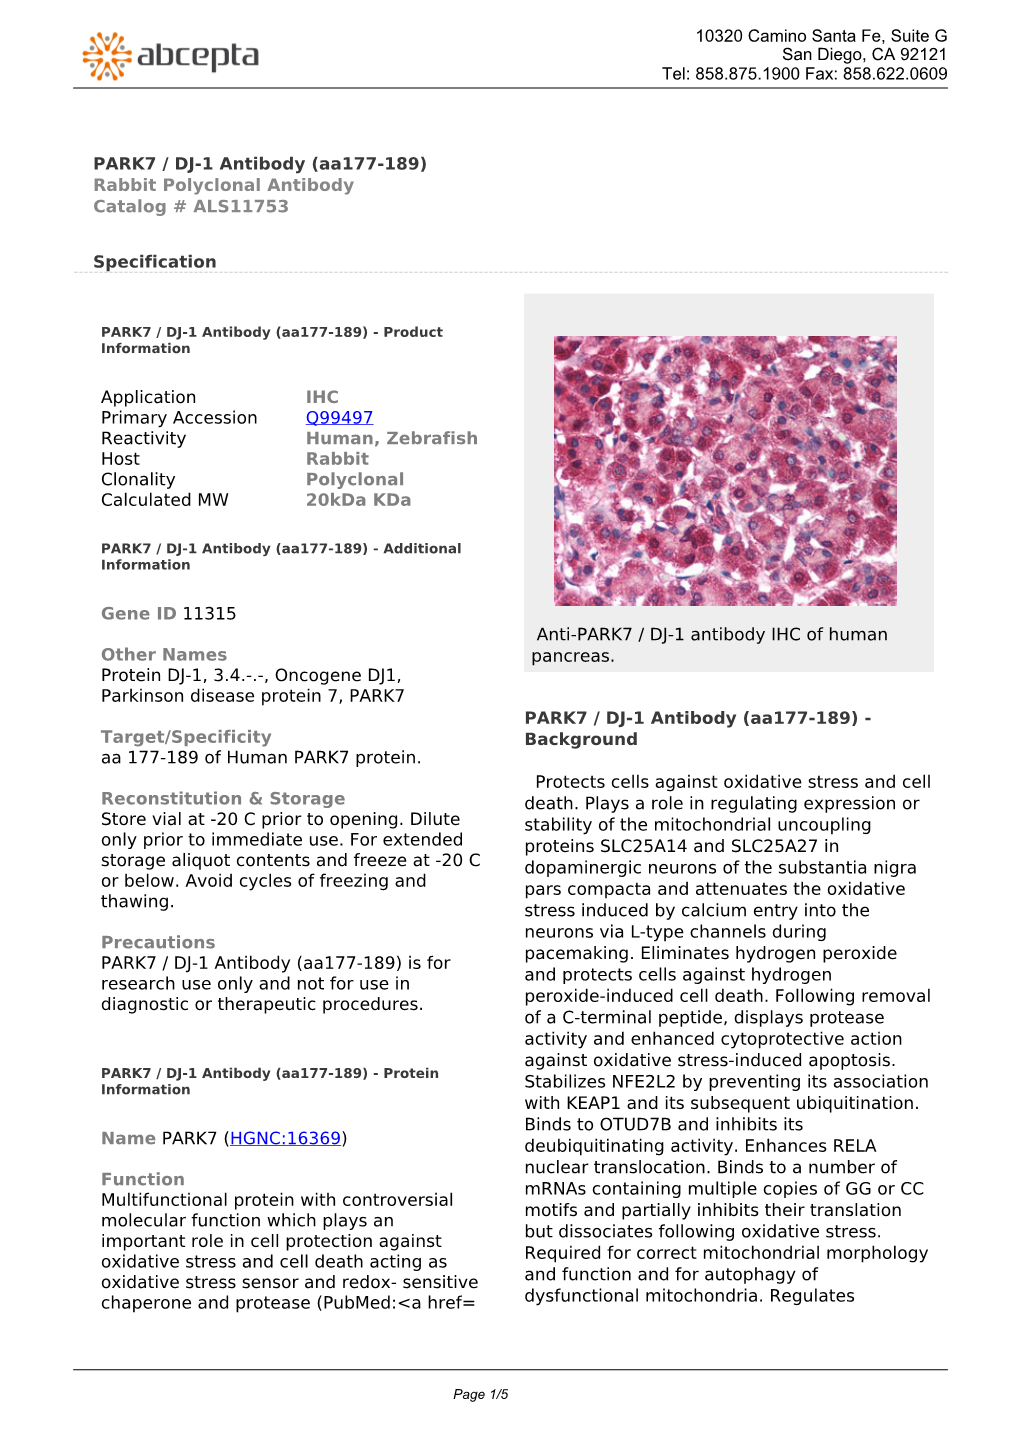 PARK7 / DJ-1 Antibody (Aa177-189) Rabbit Polyclonal Antibody Catalog # ALS11753